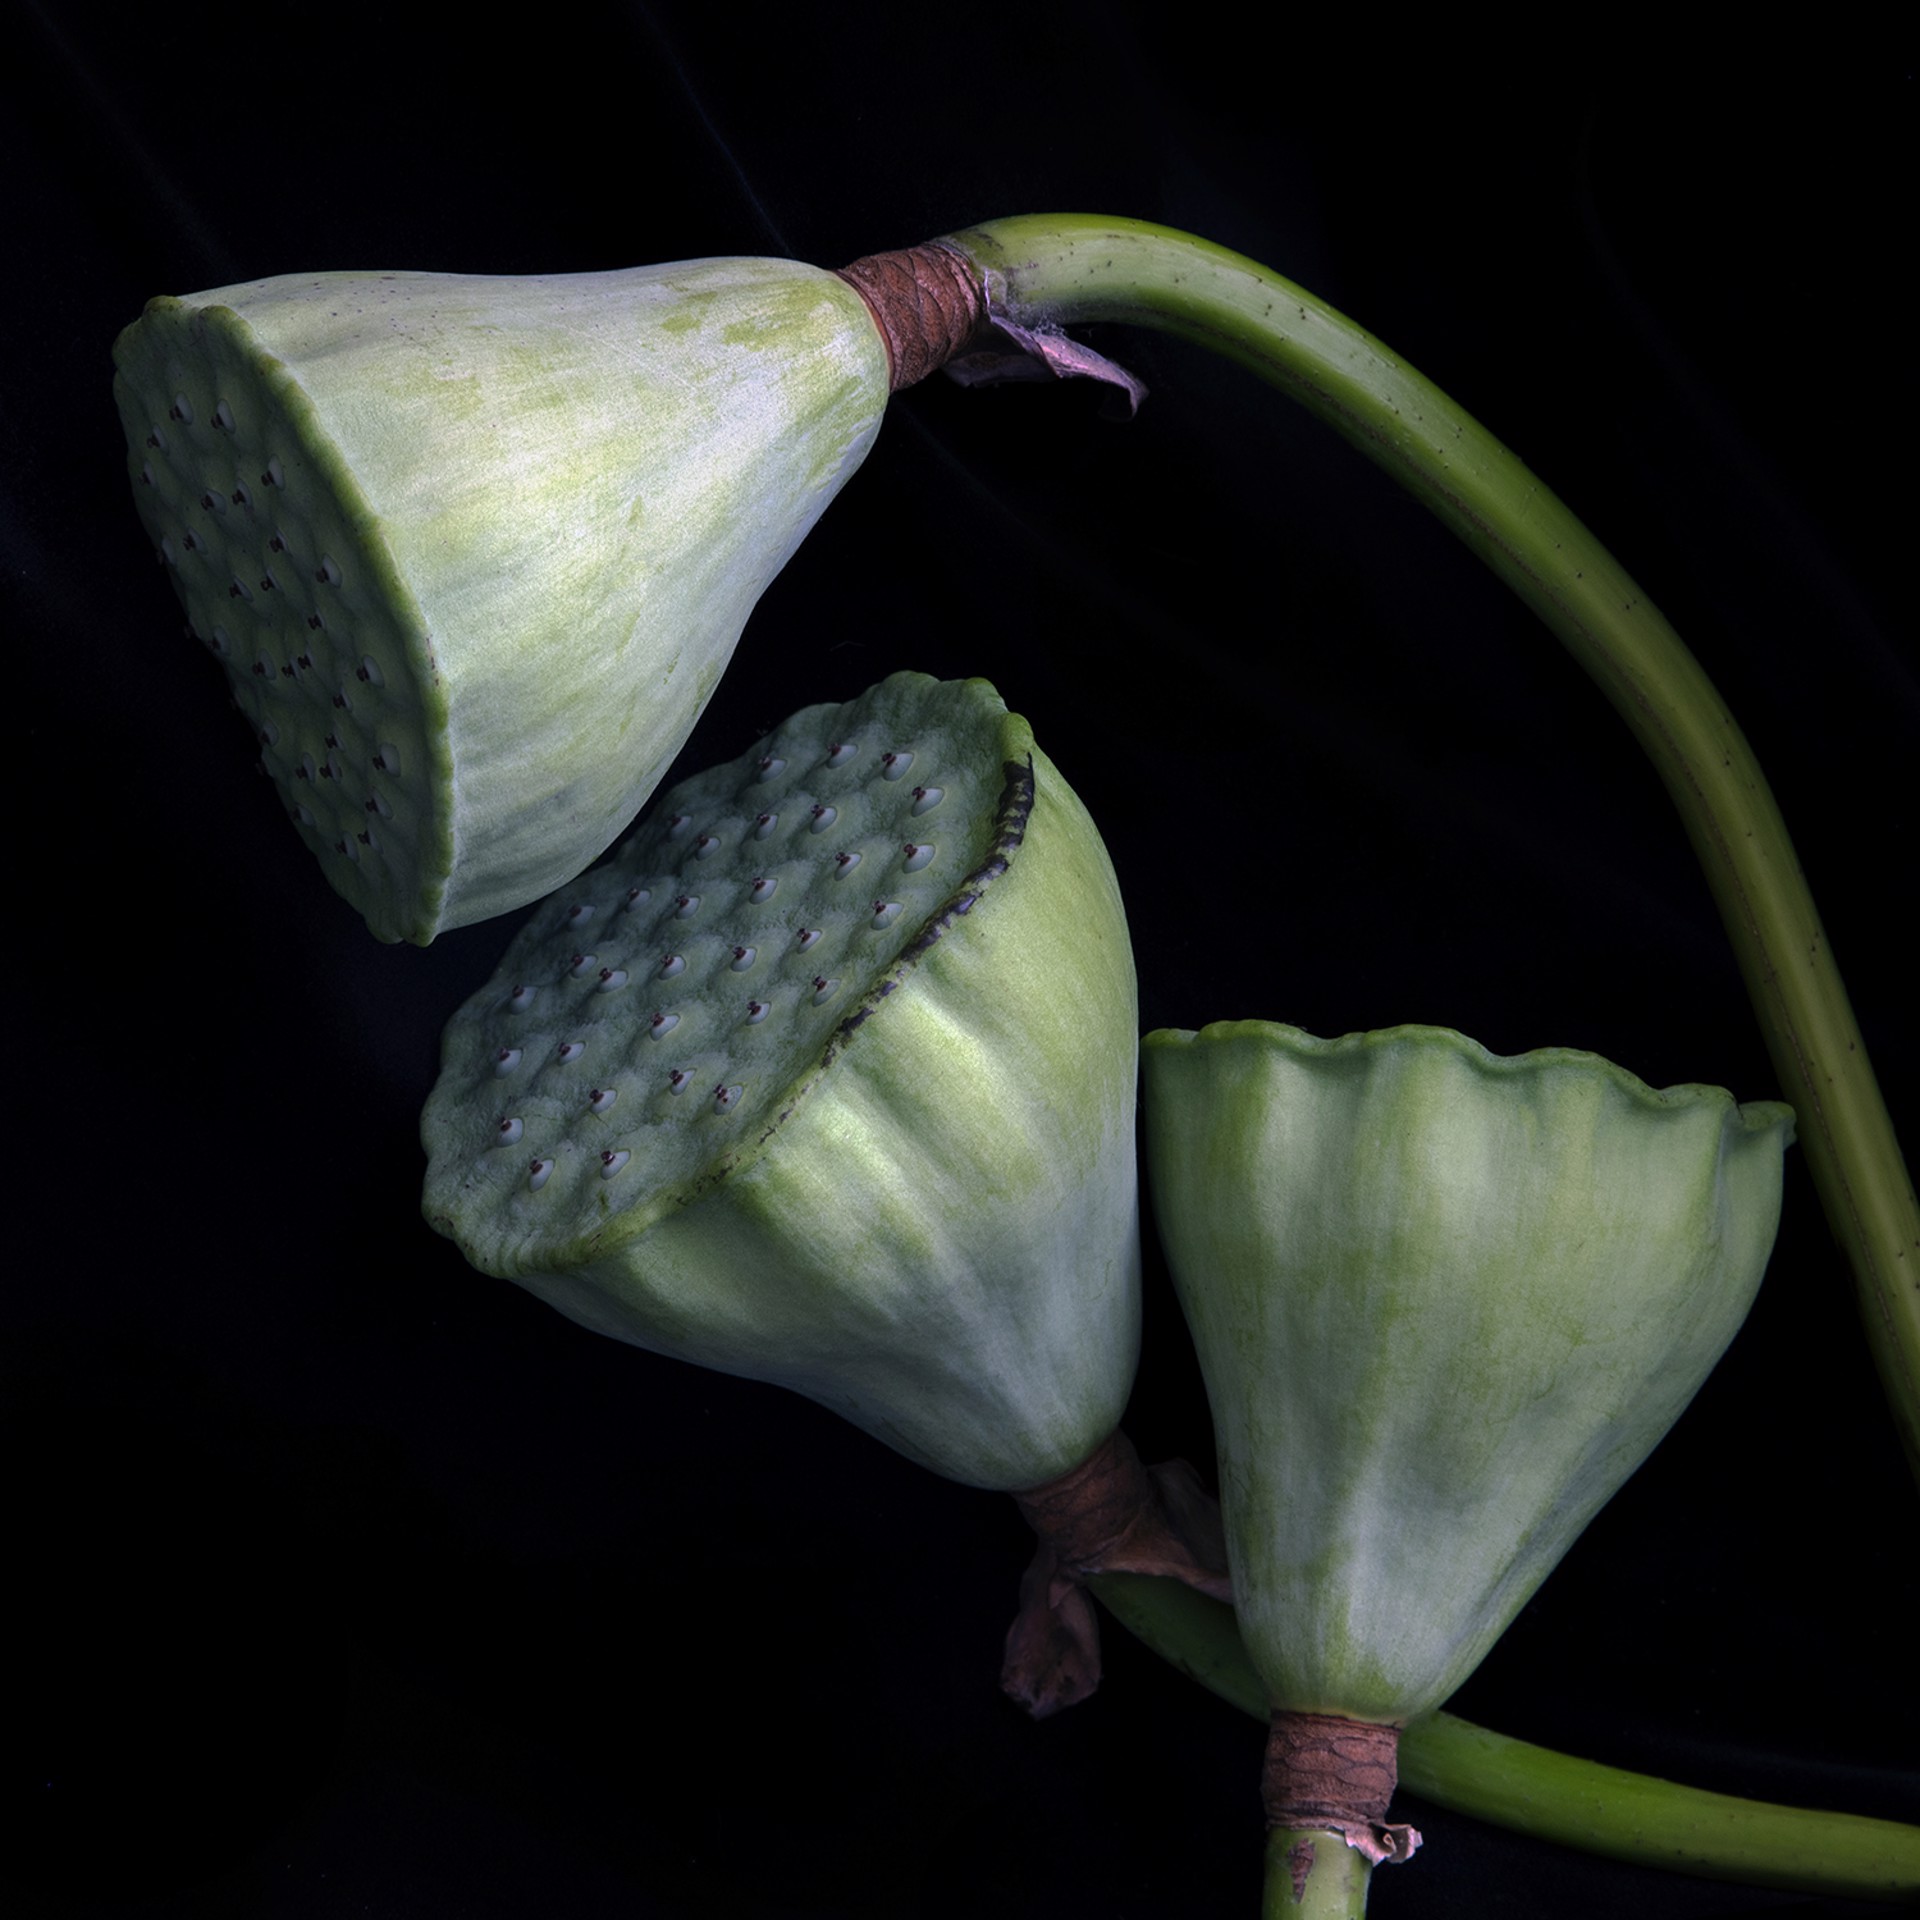 American lotus (Nelumbo lutea) 9927 by Molly Wood